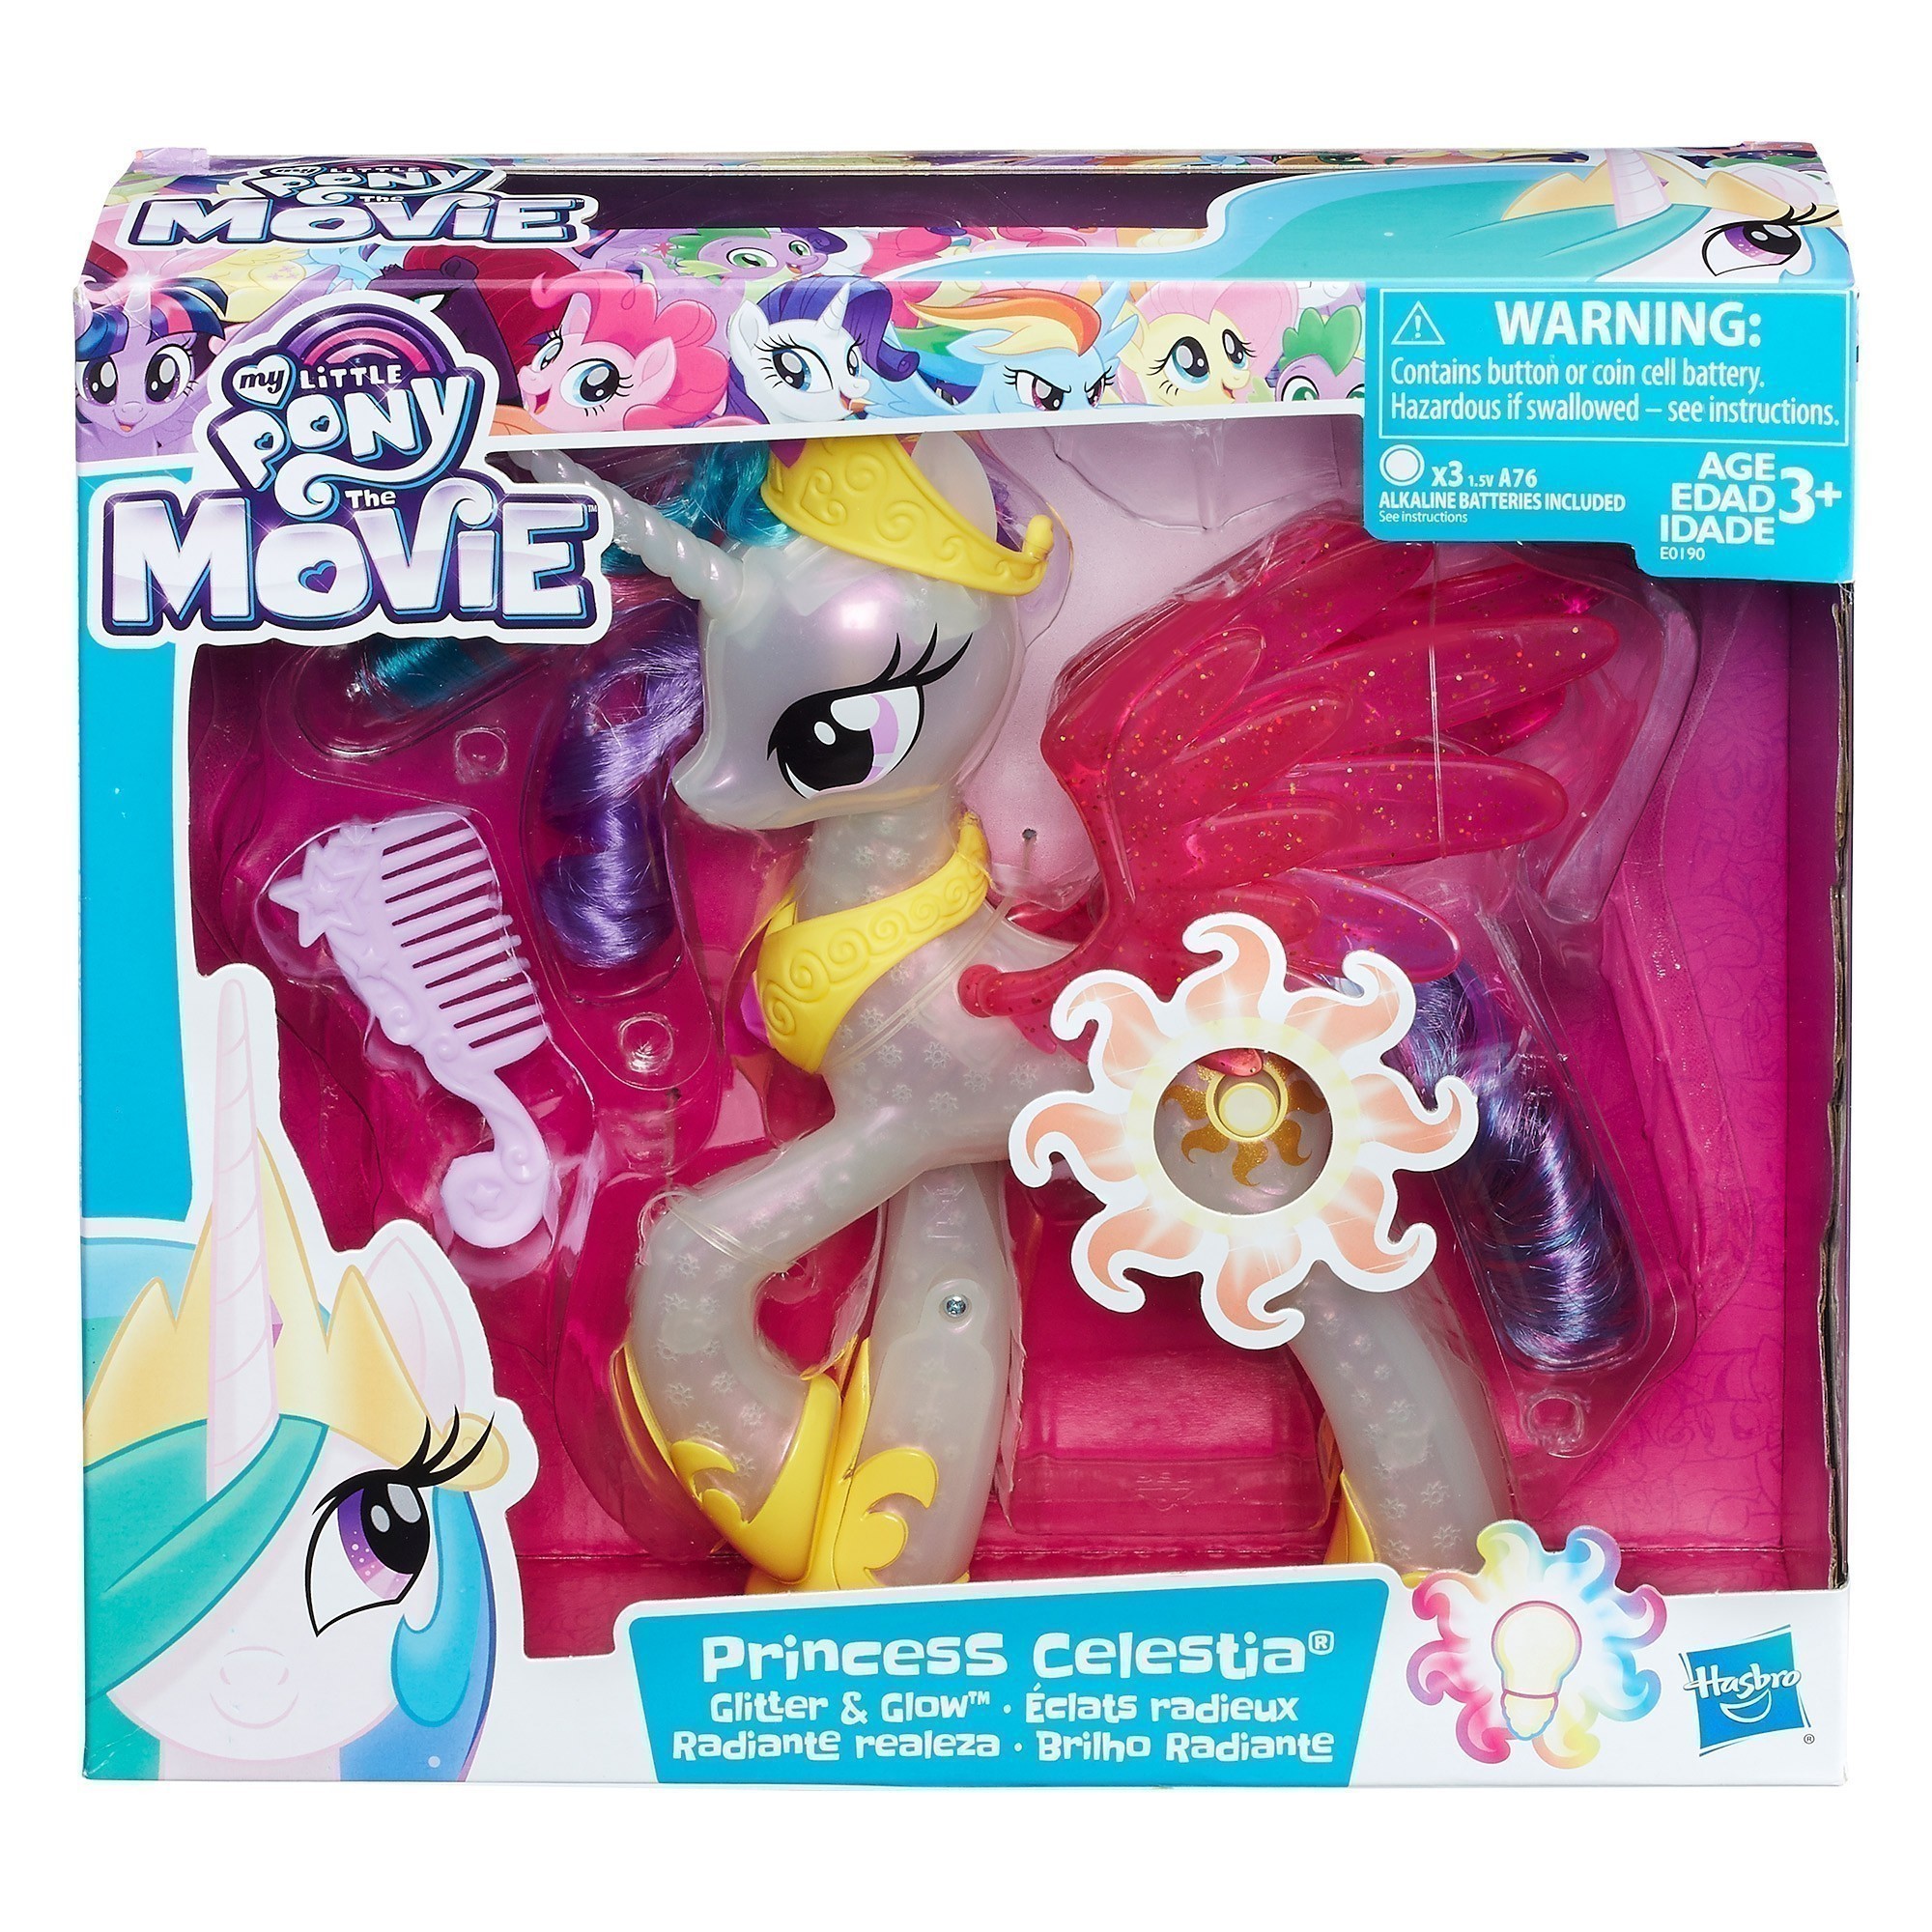 My Little Pony The Movie - Glitter & Glow Princess Celestia